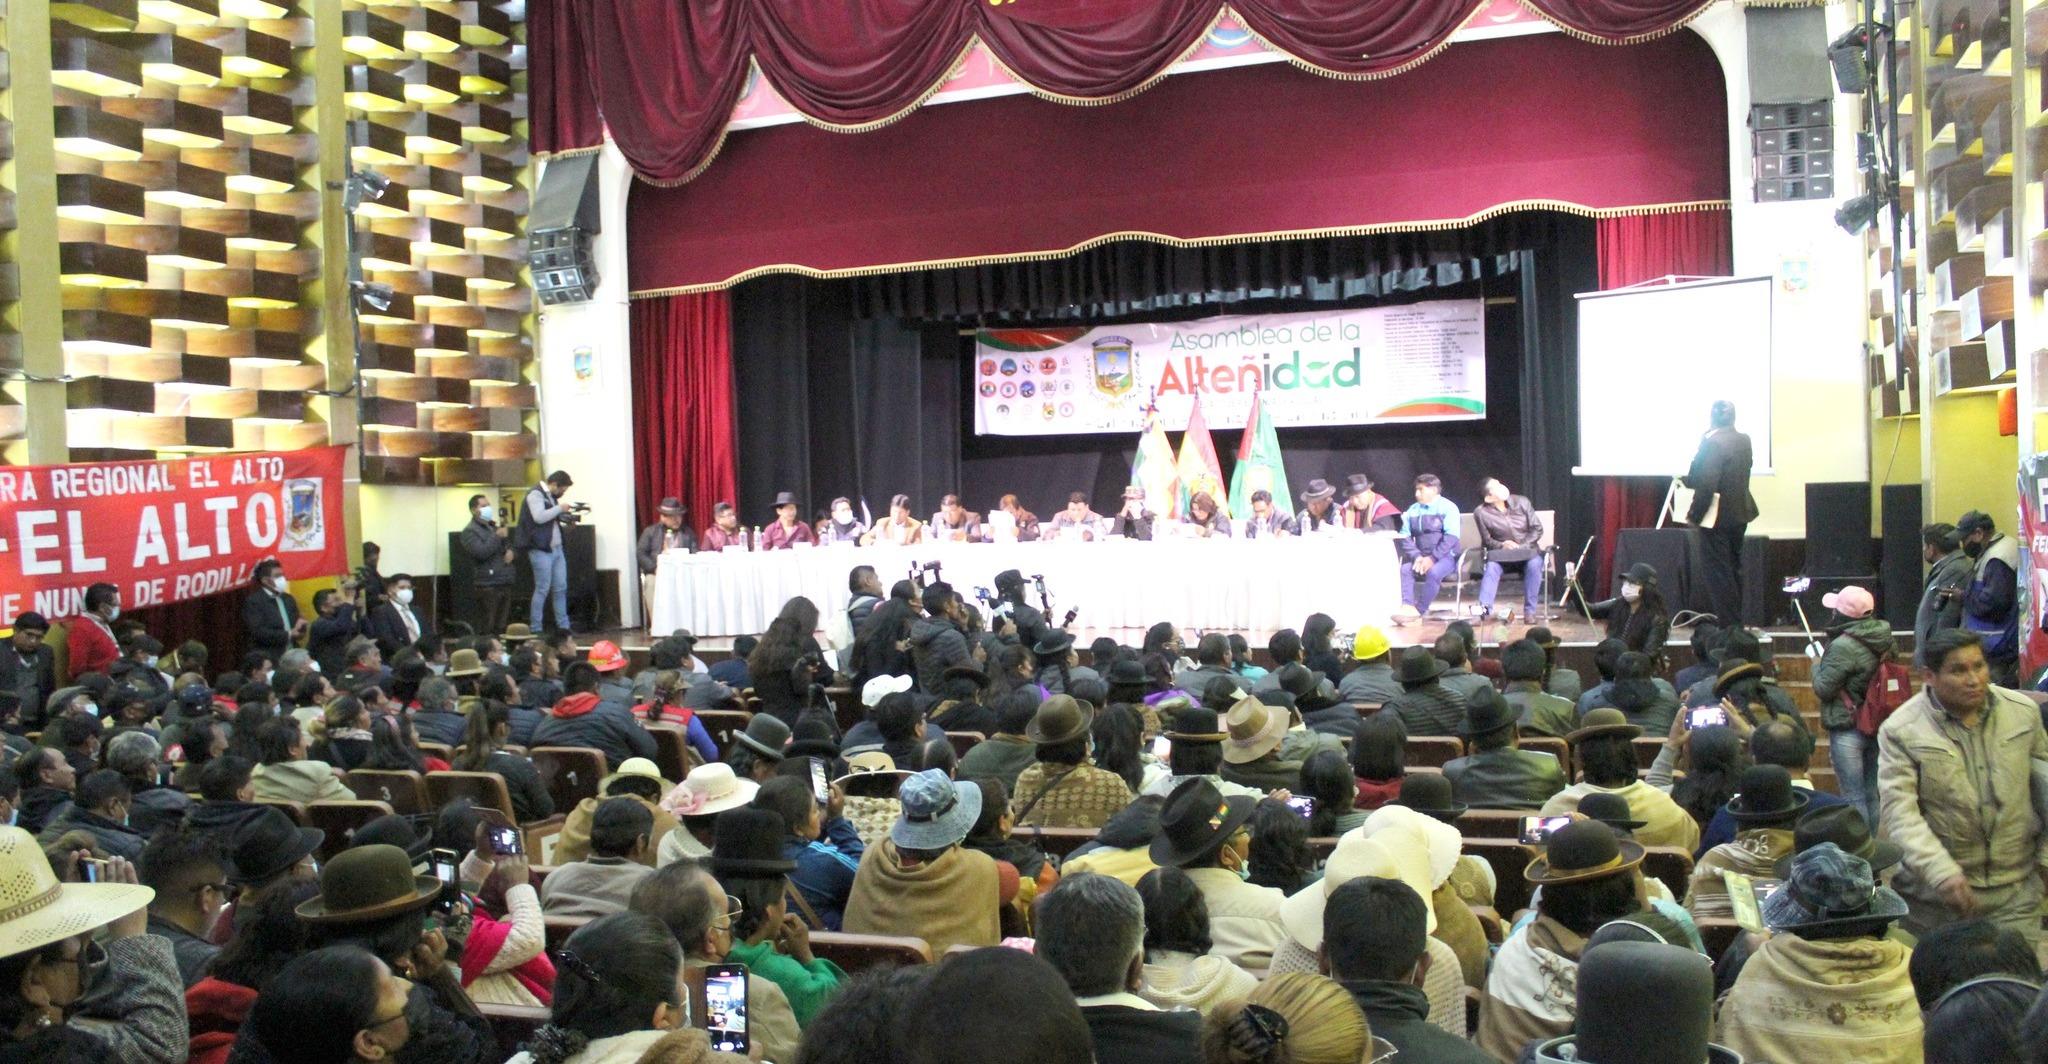 La asamblea pide que el presidente, Luis Arce, asista. Foto: Facebook Asamblea de la Alteñidad